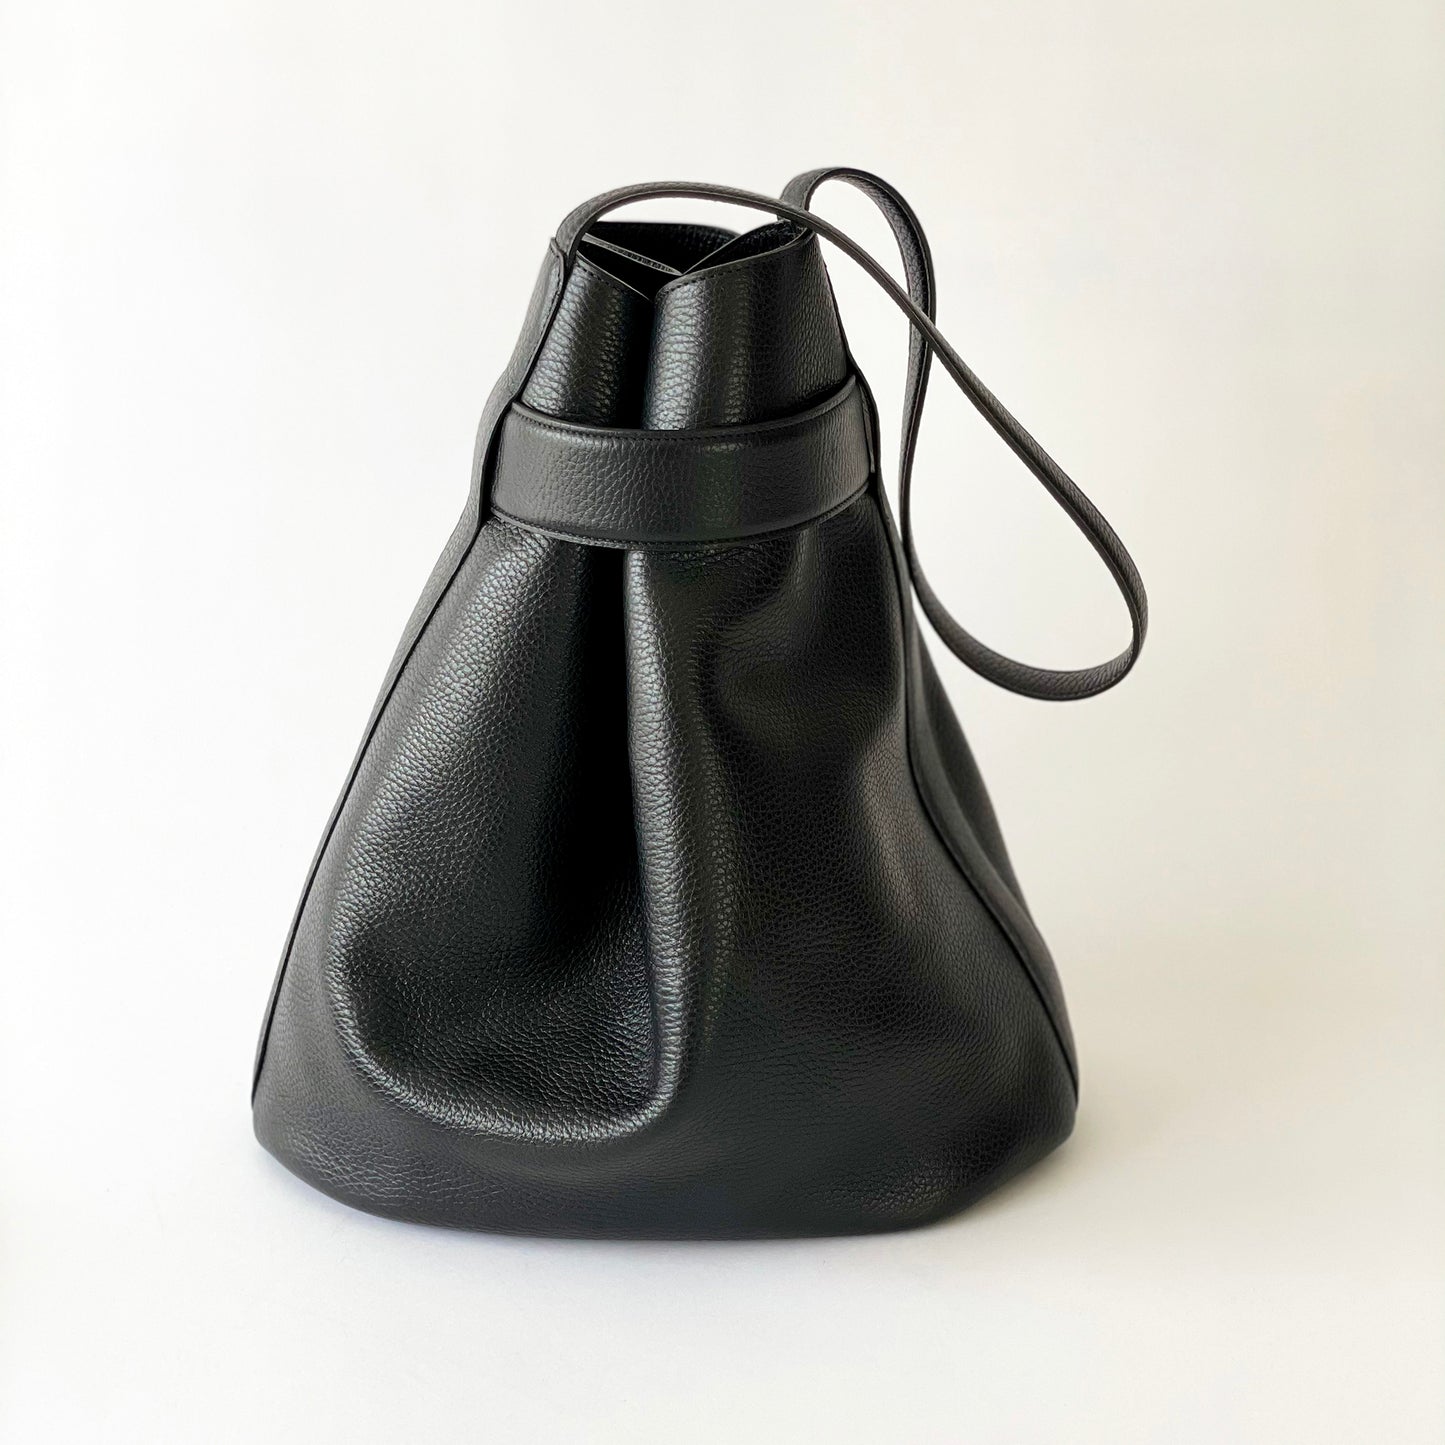 The Navona Bucket Bag in Black